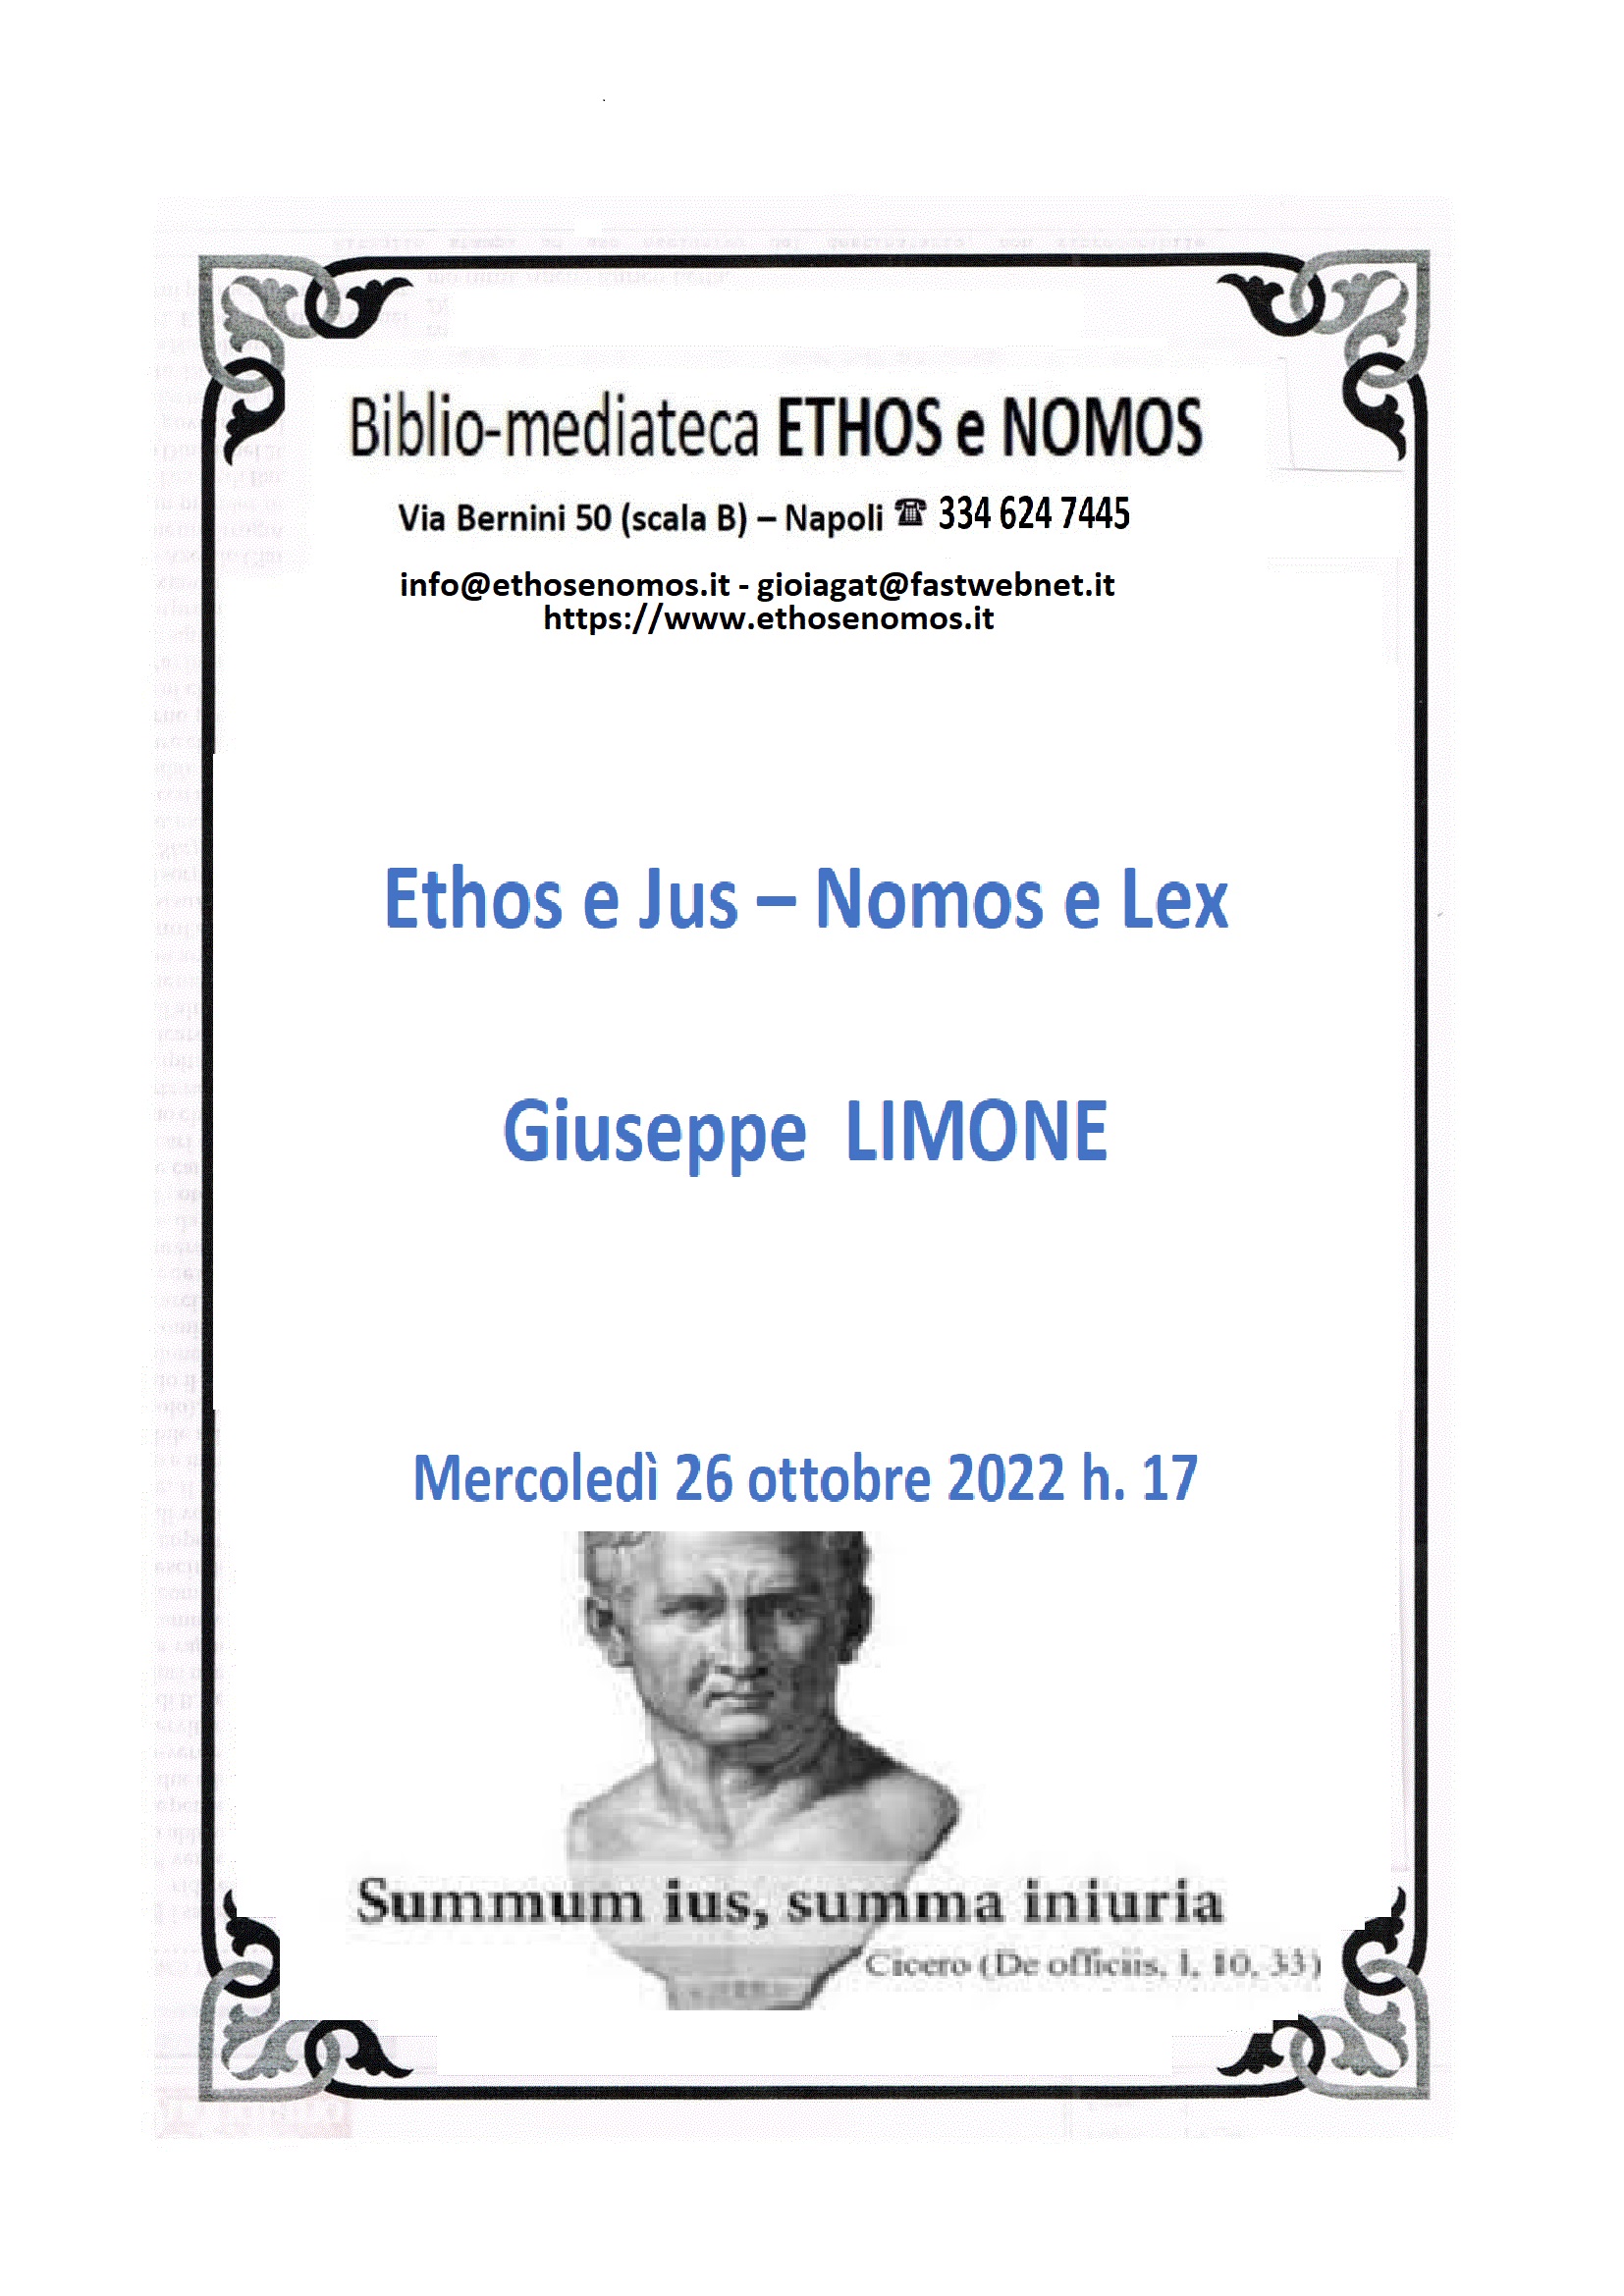 Giuseppe LIMONE - Ethos e Jus - Nomos e Lex